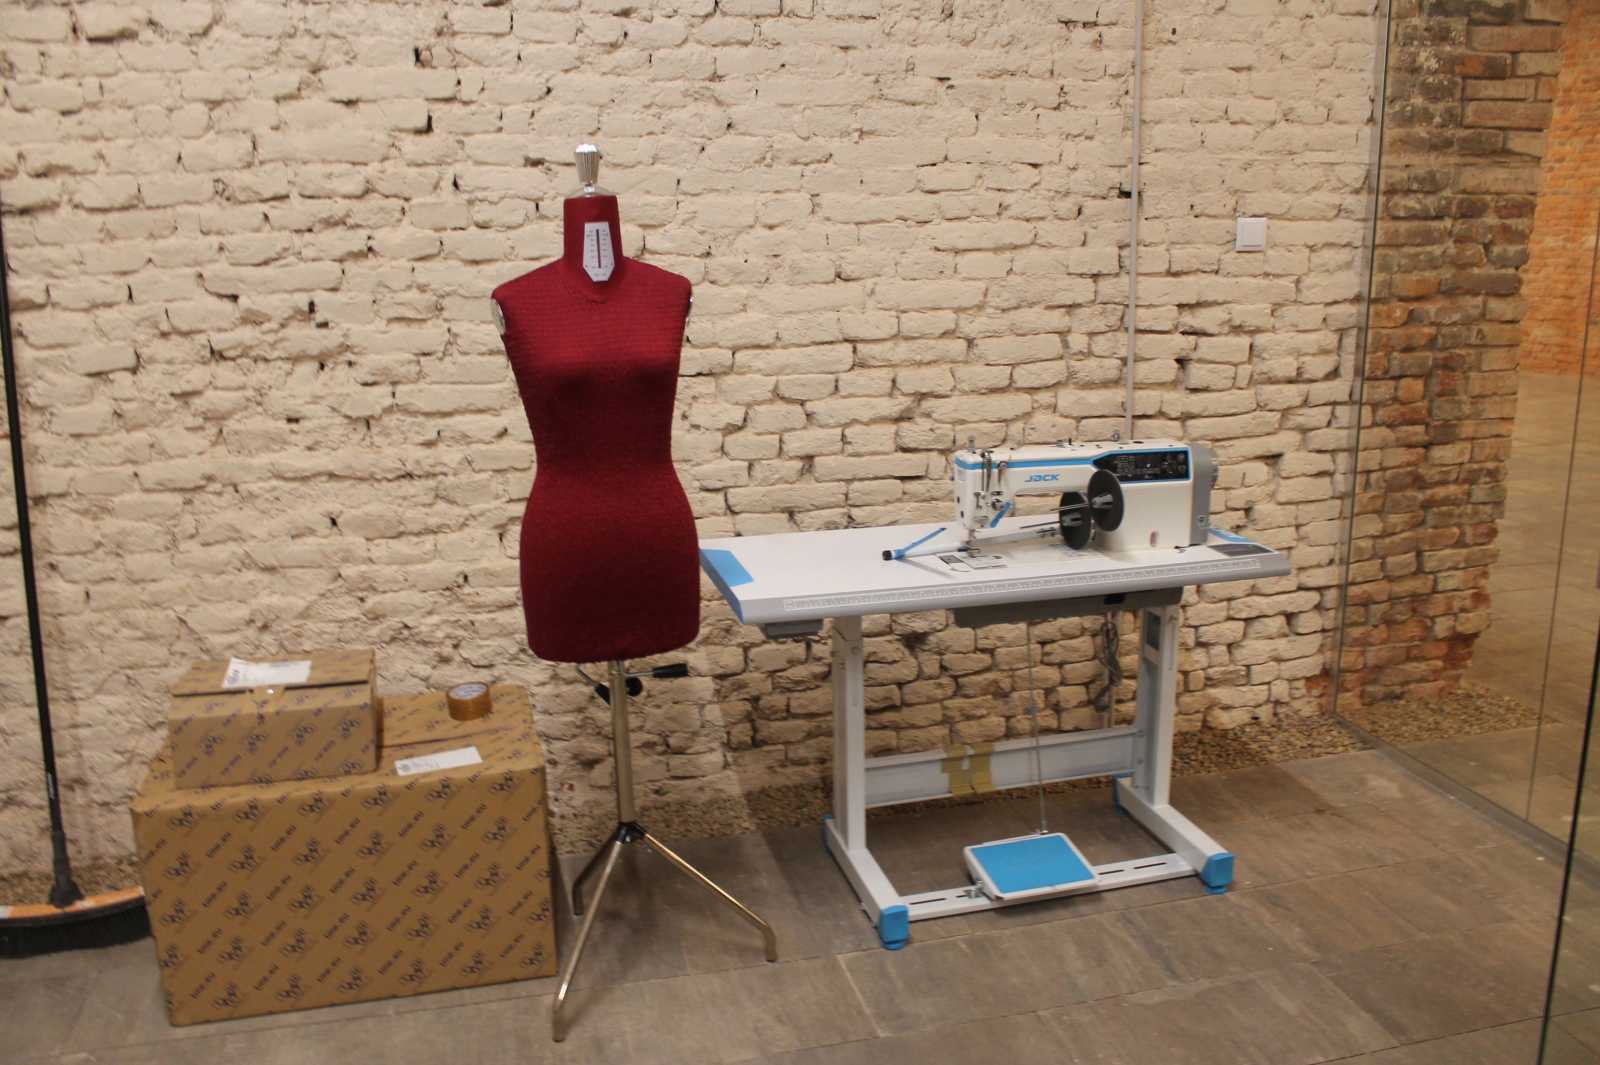 A majdani textilipari alkotóműhely felszerelésének egy része már megérkezett Nagyváradra | A szerző felvétele